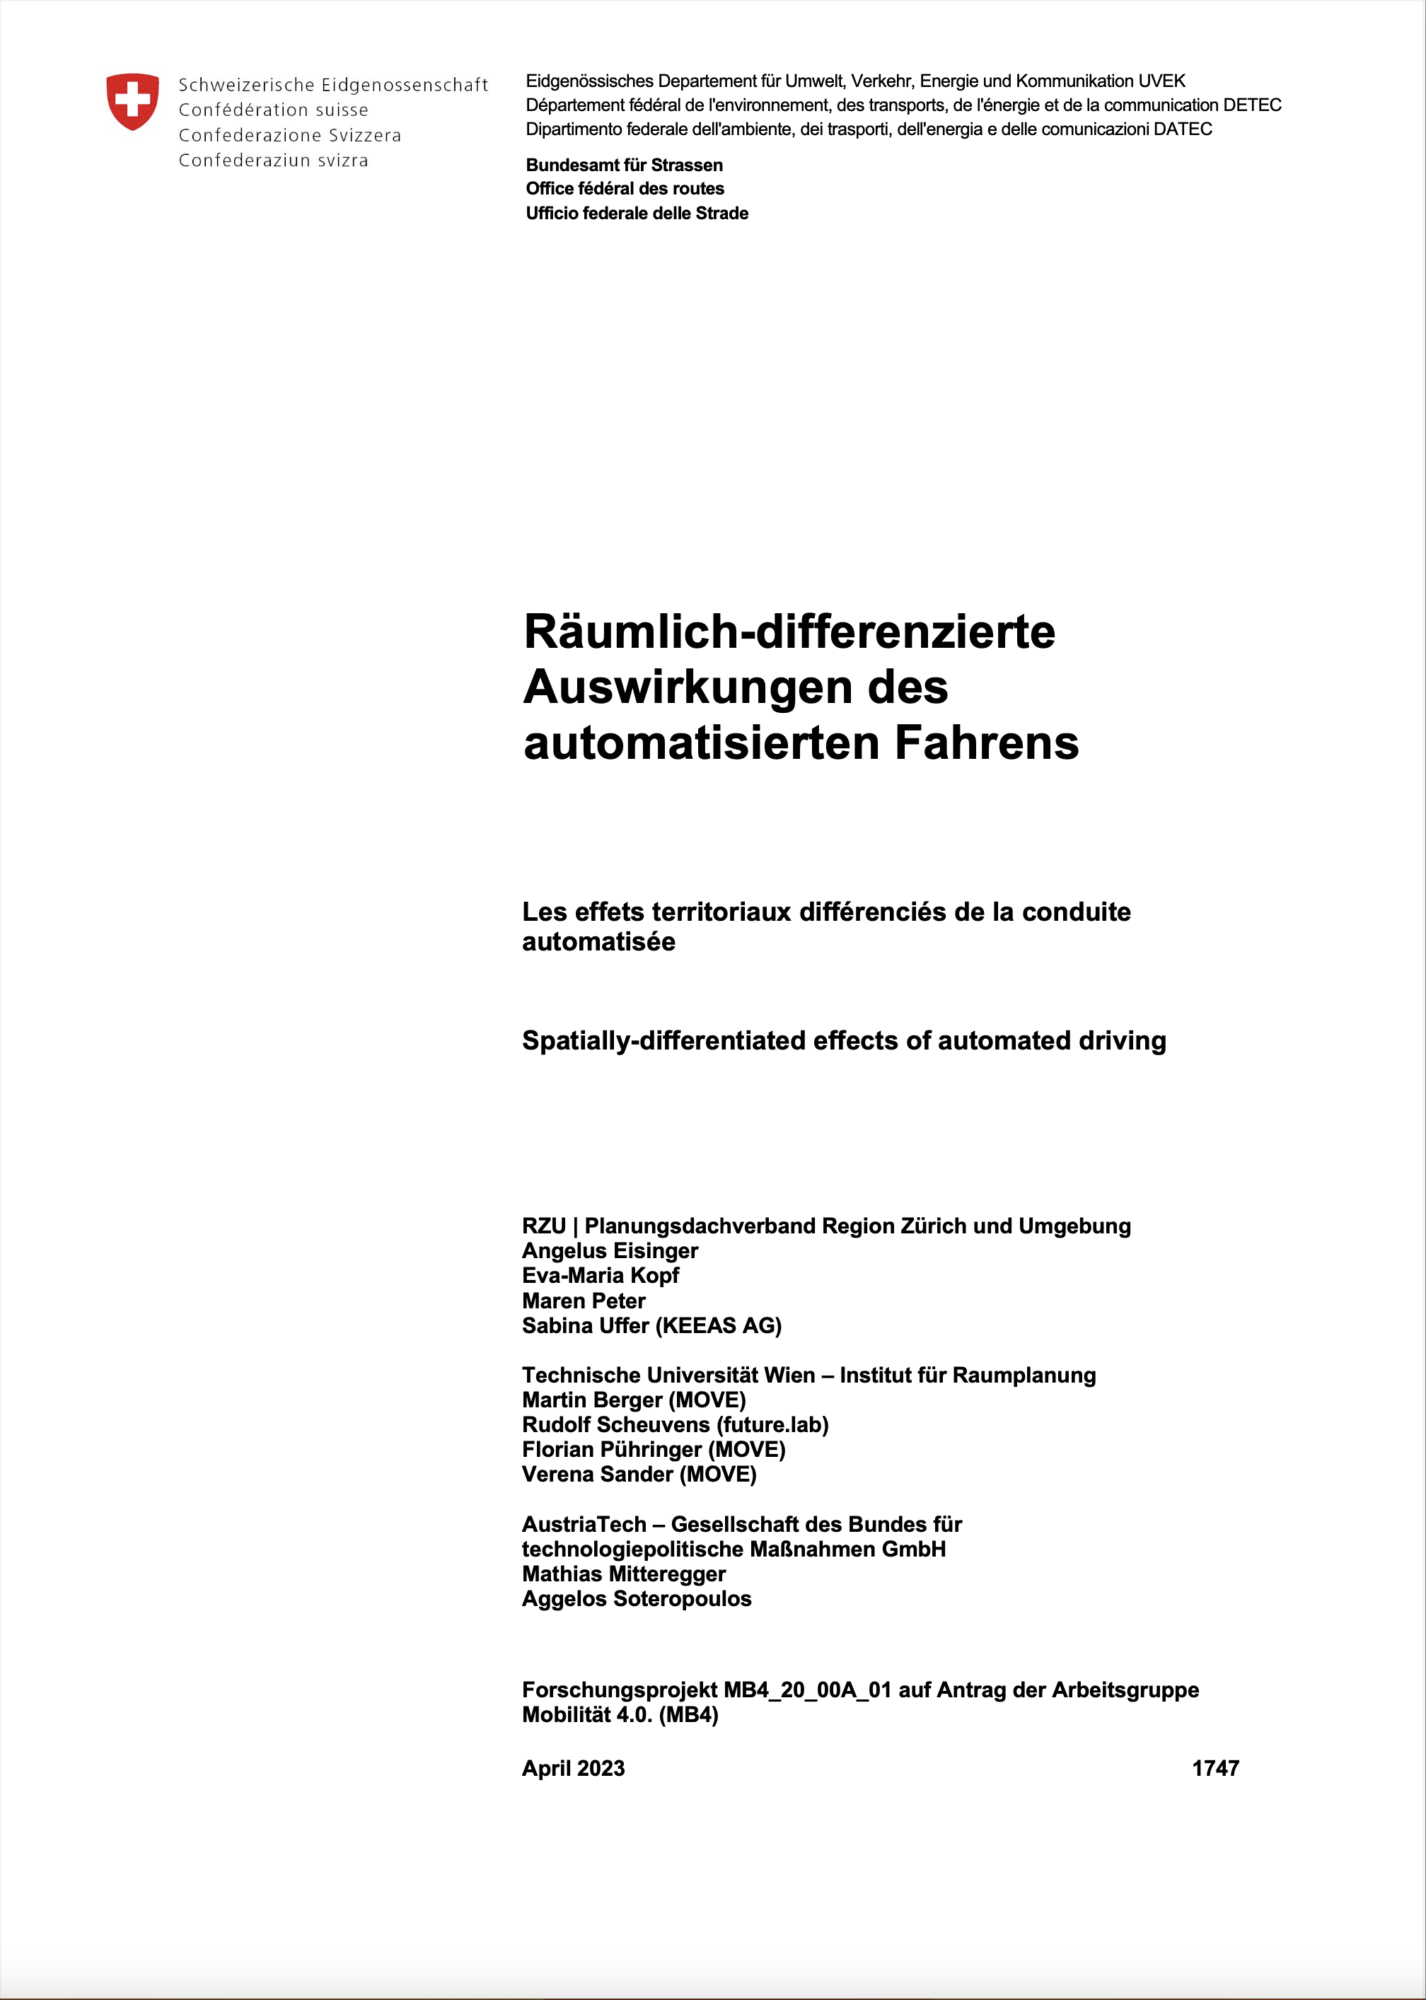 Publikation "Räumlich-differenzierte Auswirkungen des automatisierten Fahrens". Abb.: © RZU